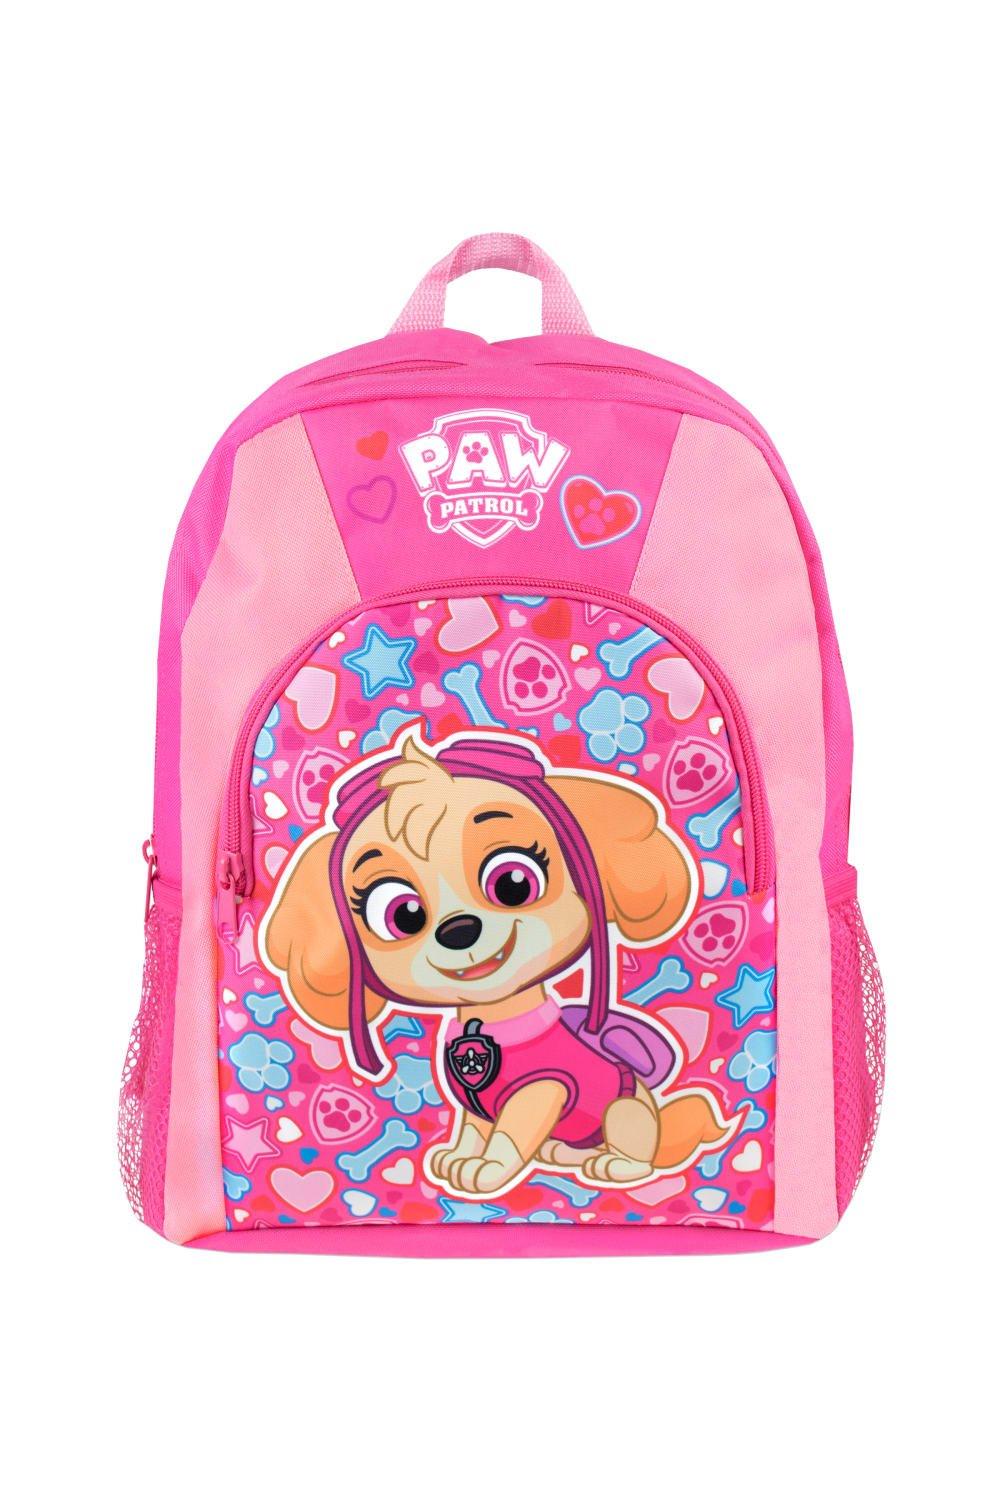 Детский рюкзак Skye Paw Patrol, розовый роспись по холсту 21х15 скай paw patrol